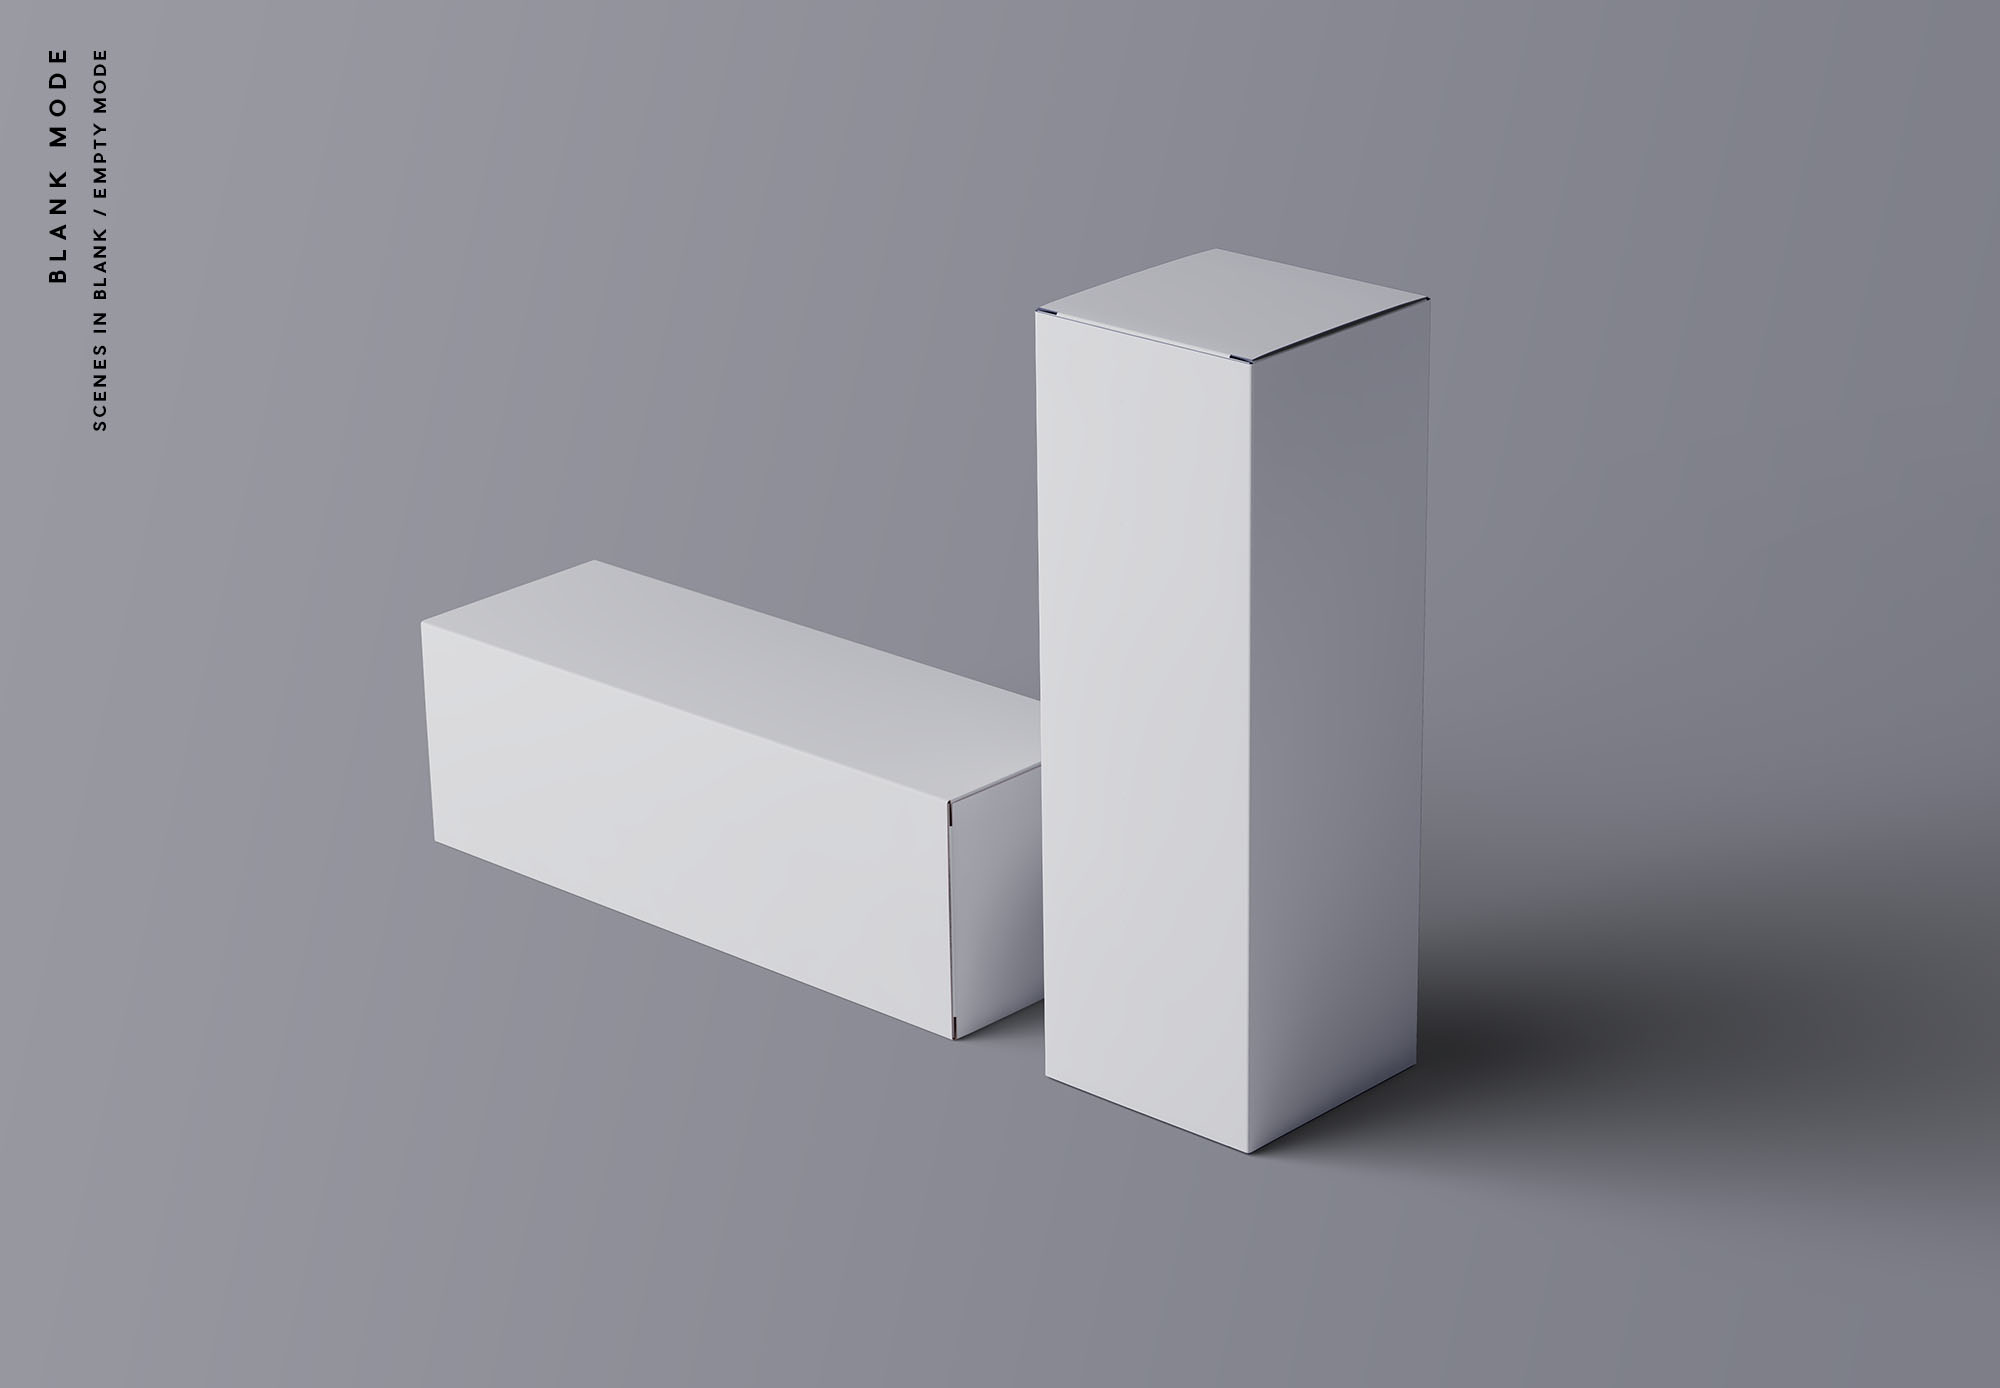 水平长方体产品包装盒定制设计样机模板 Horizontal Package Box Mockup插图(9)